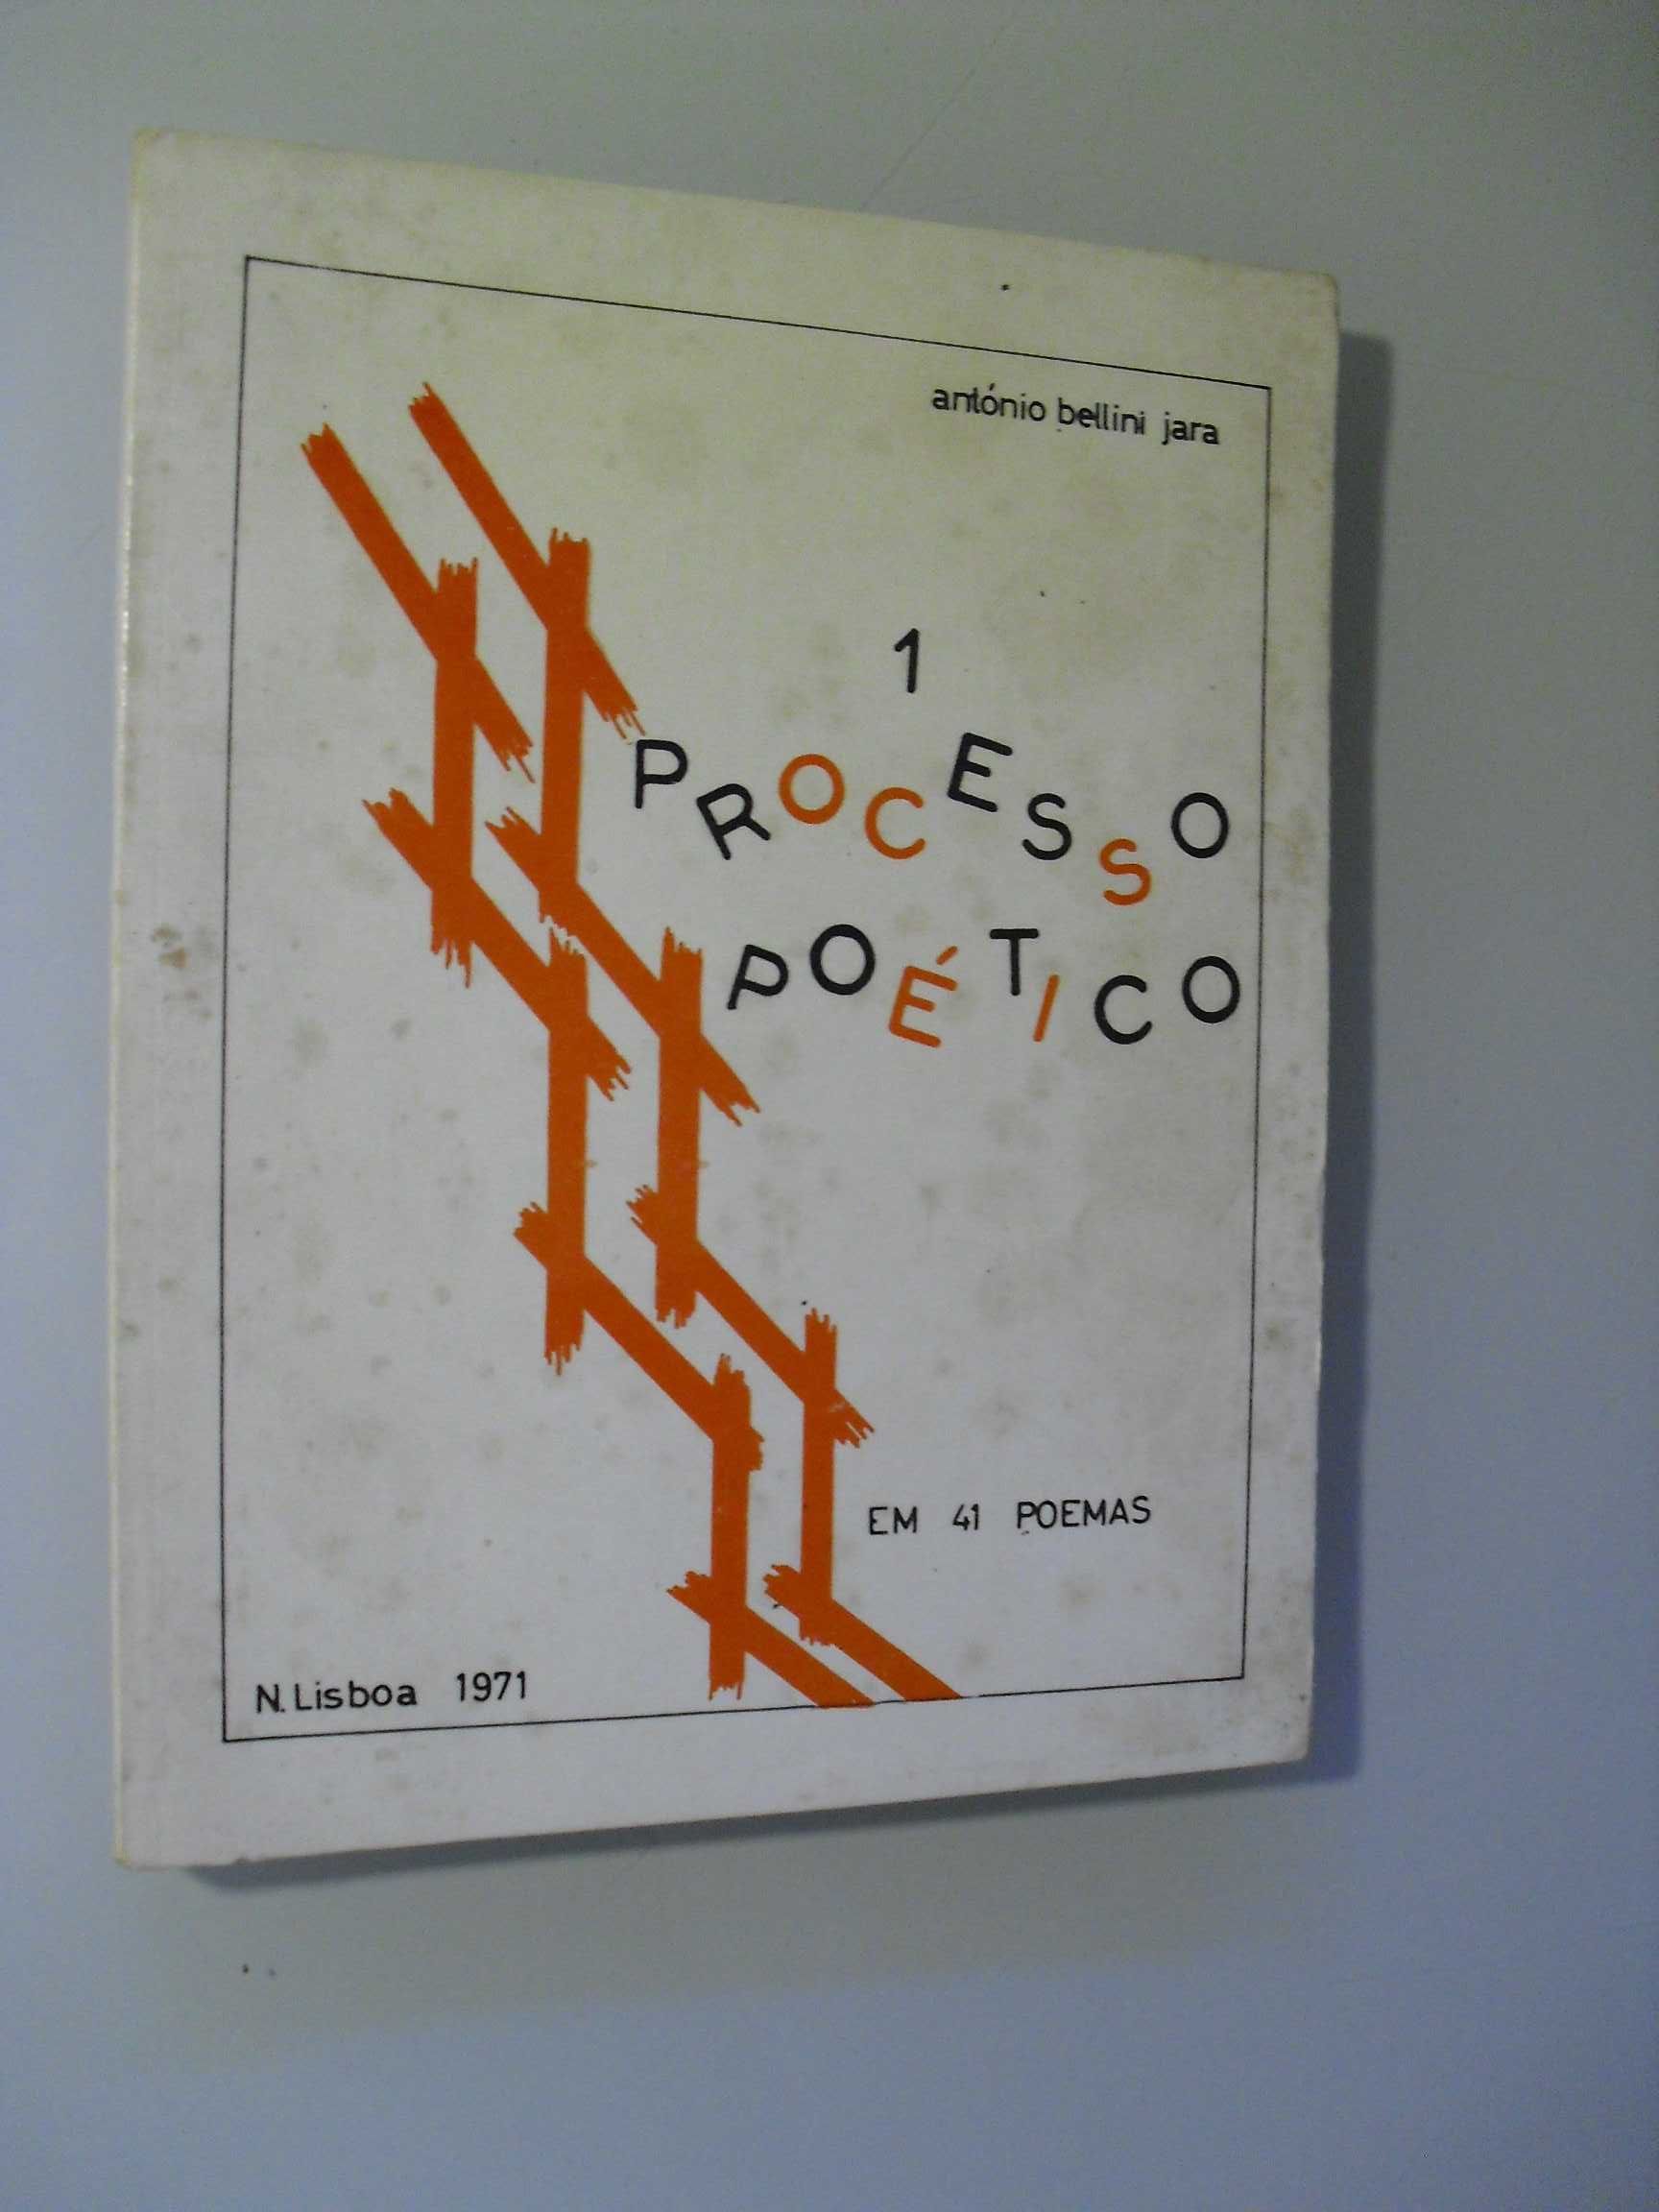 Jara (António Bellini);O Processo Poético em 41 Poemas;Nova Lisboa